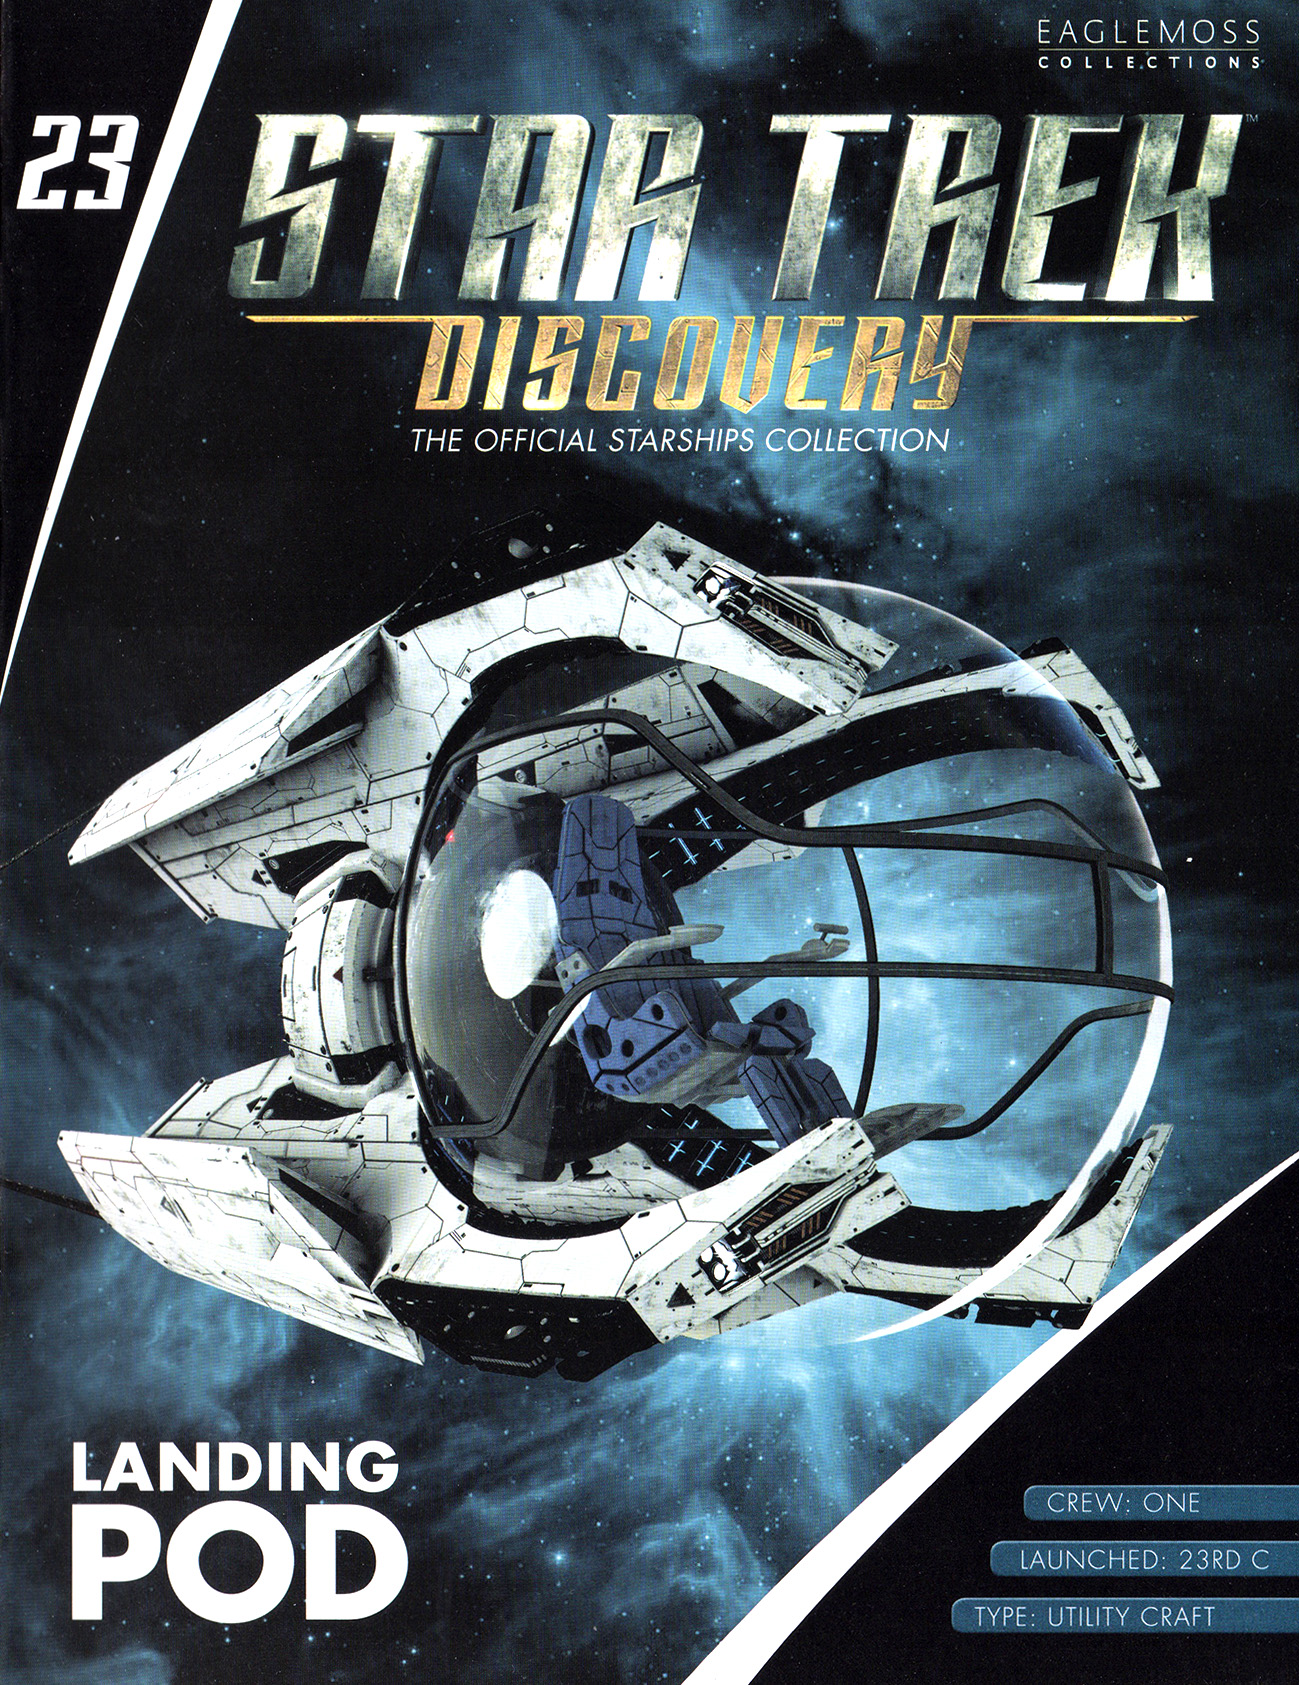 Eaglemoss Star Trek Starships Discovery Issue 23